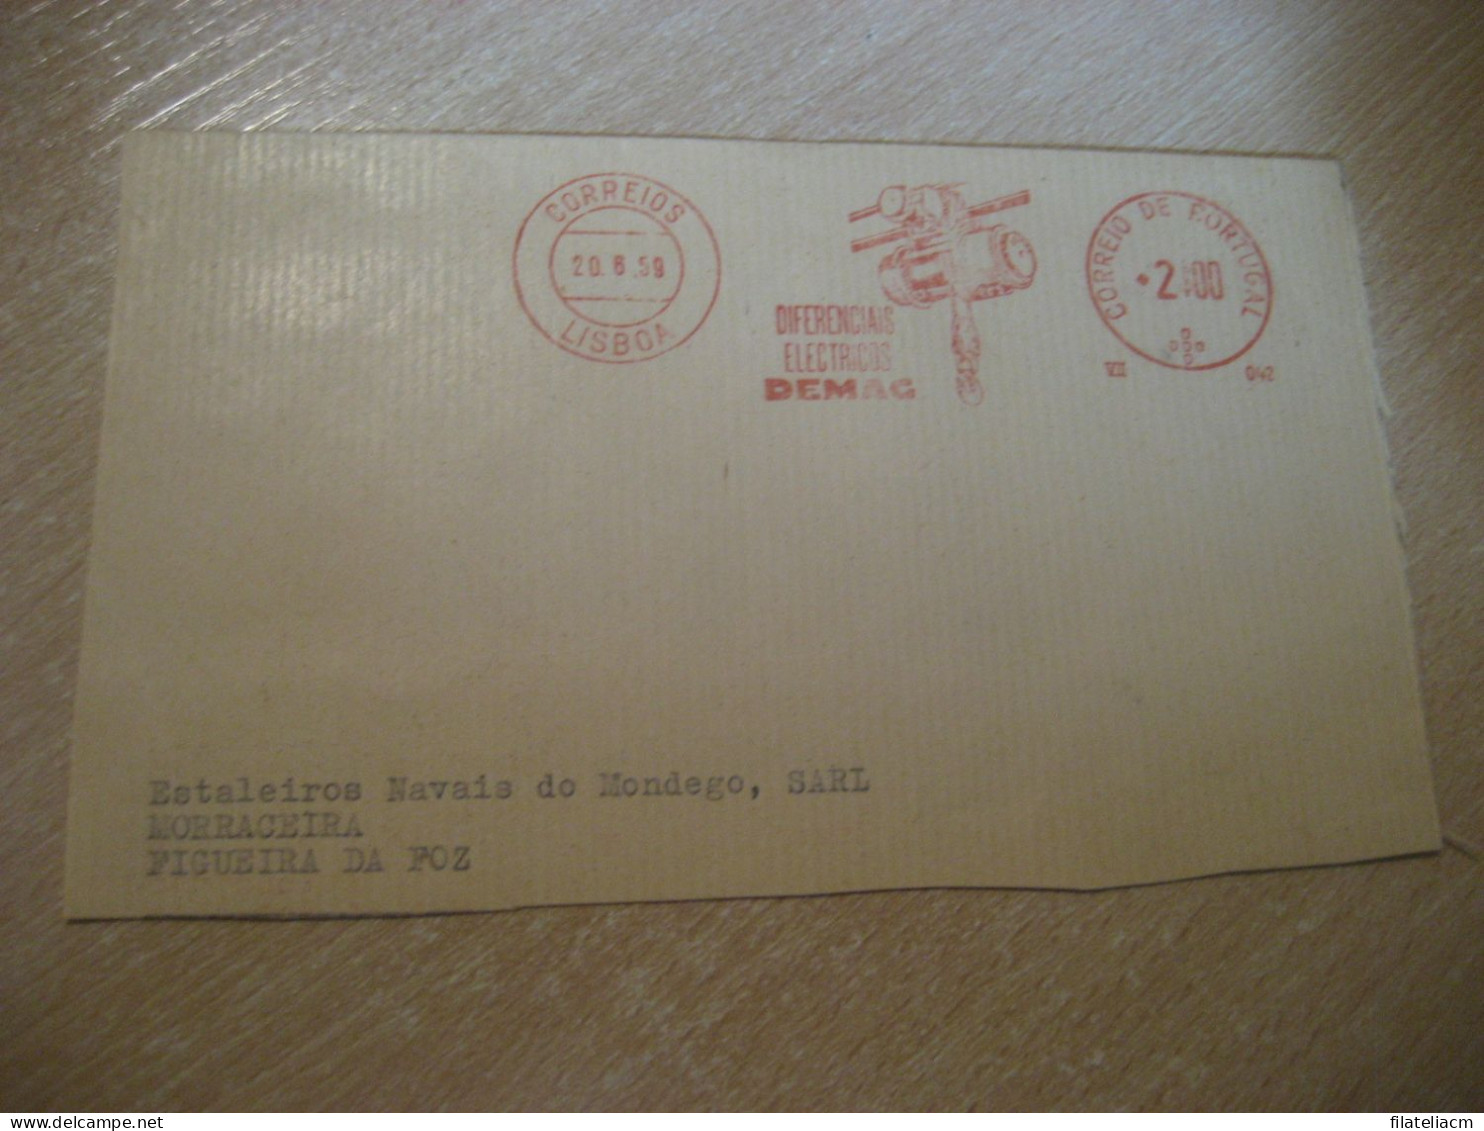 LISBOA 1959 To Figueira Da Foz DEMAC Diferenciais Electricos Physics Meter Mail Cancel Cut Cuted Cover PORTUGAL - Briefe U. Dokumente